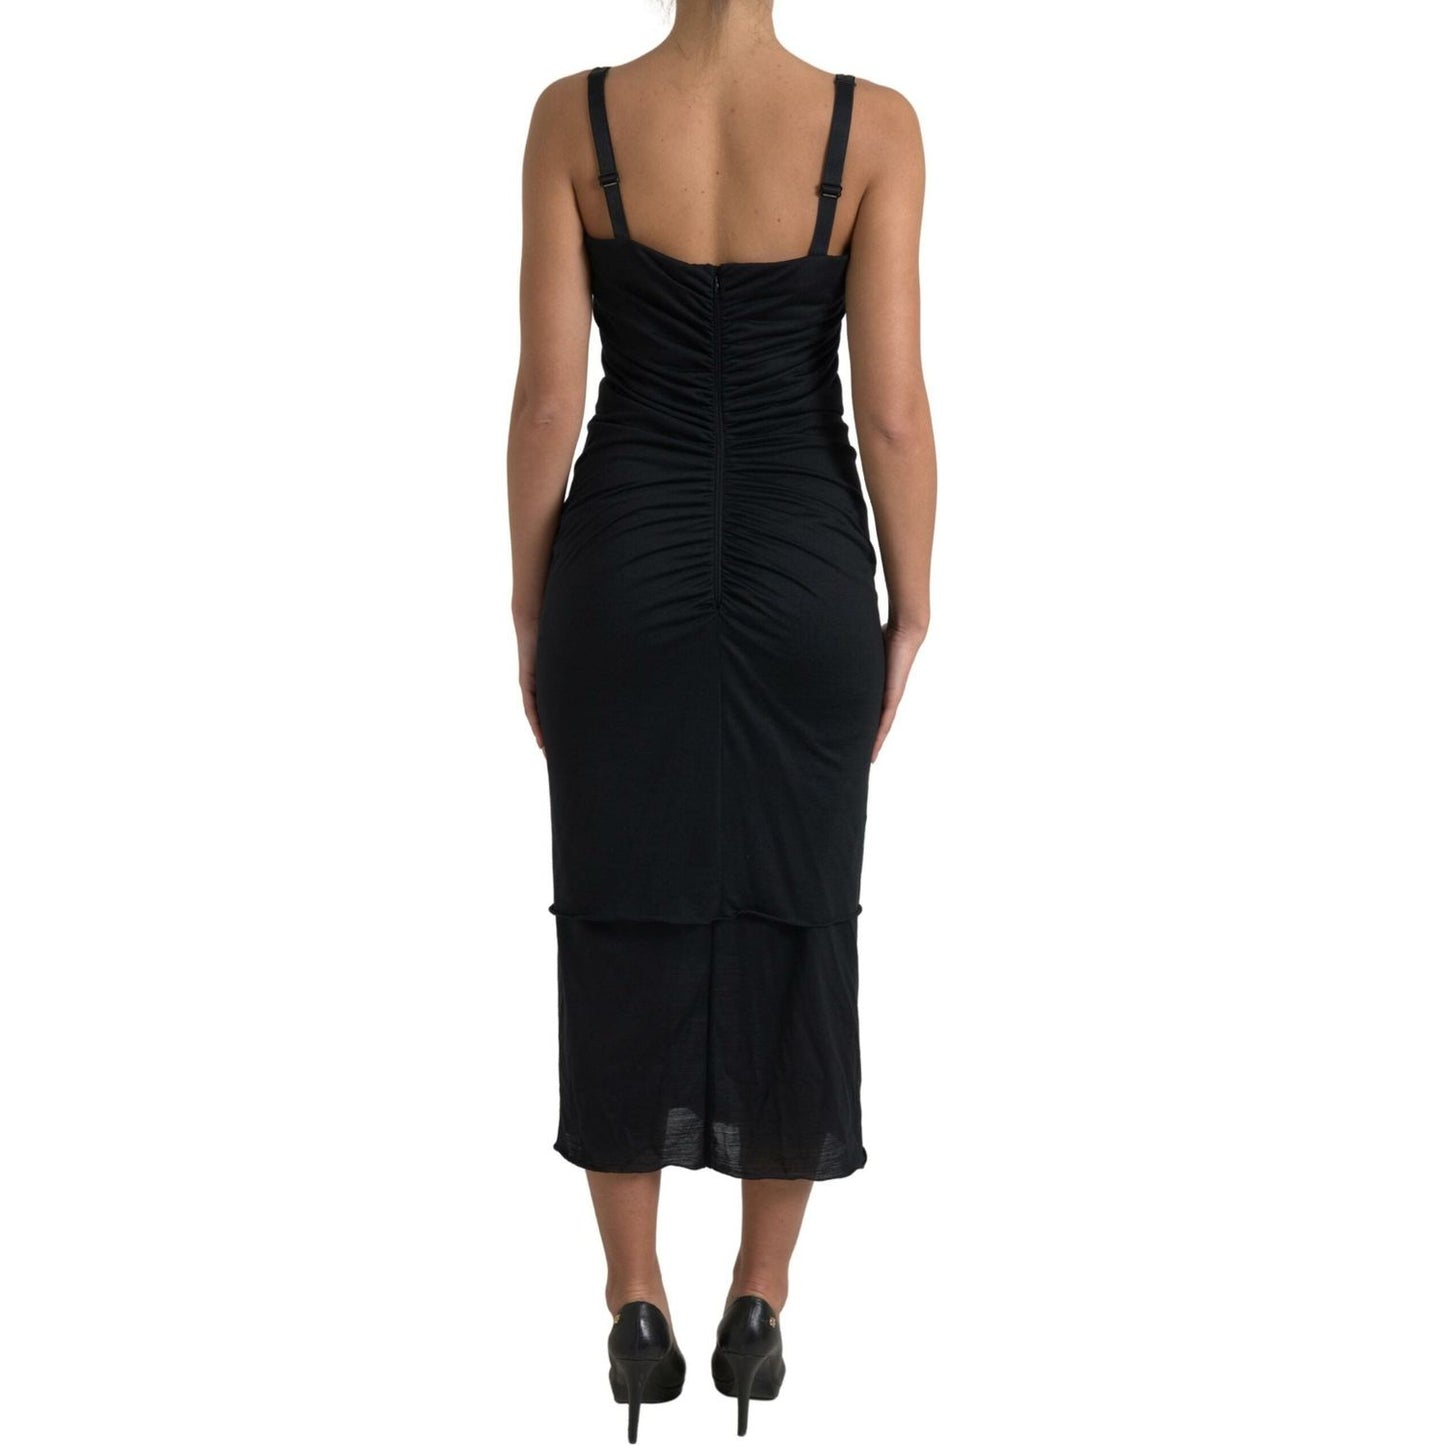 Dolce & Gabbana Elegant Wool Sheath Dress with Rose Applique black-roses-stretch-sheath-bodycon-dress